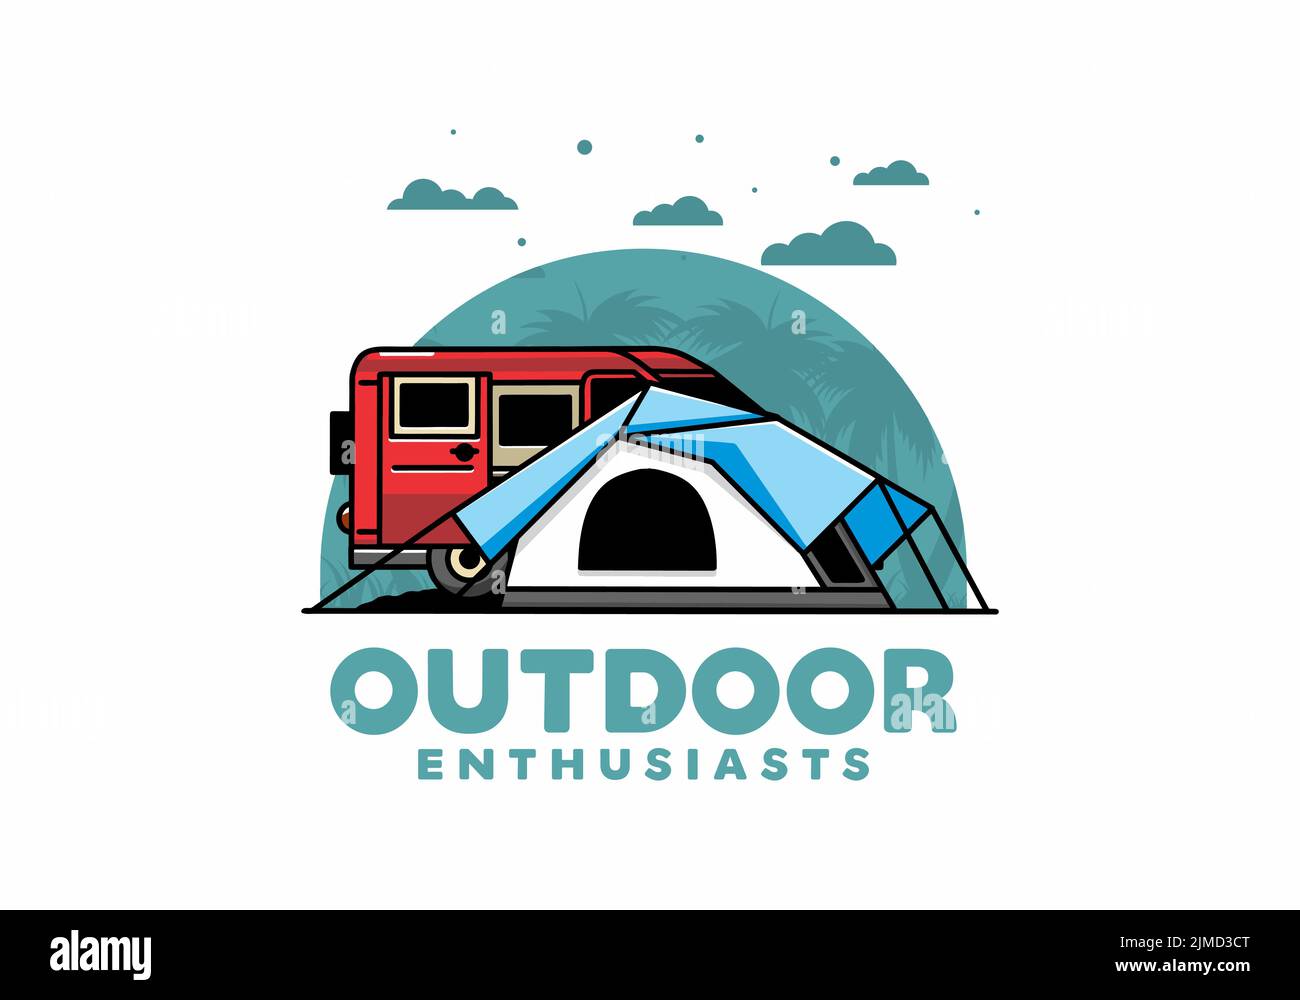 Illustrazione di un furgone auto e tenda da campeggio Illustrazione Vettoriale